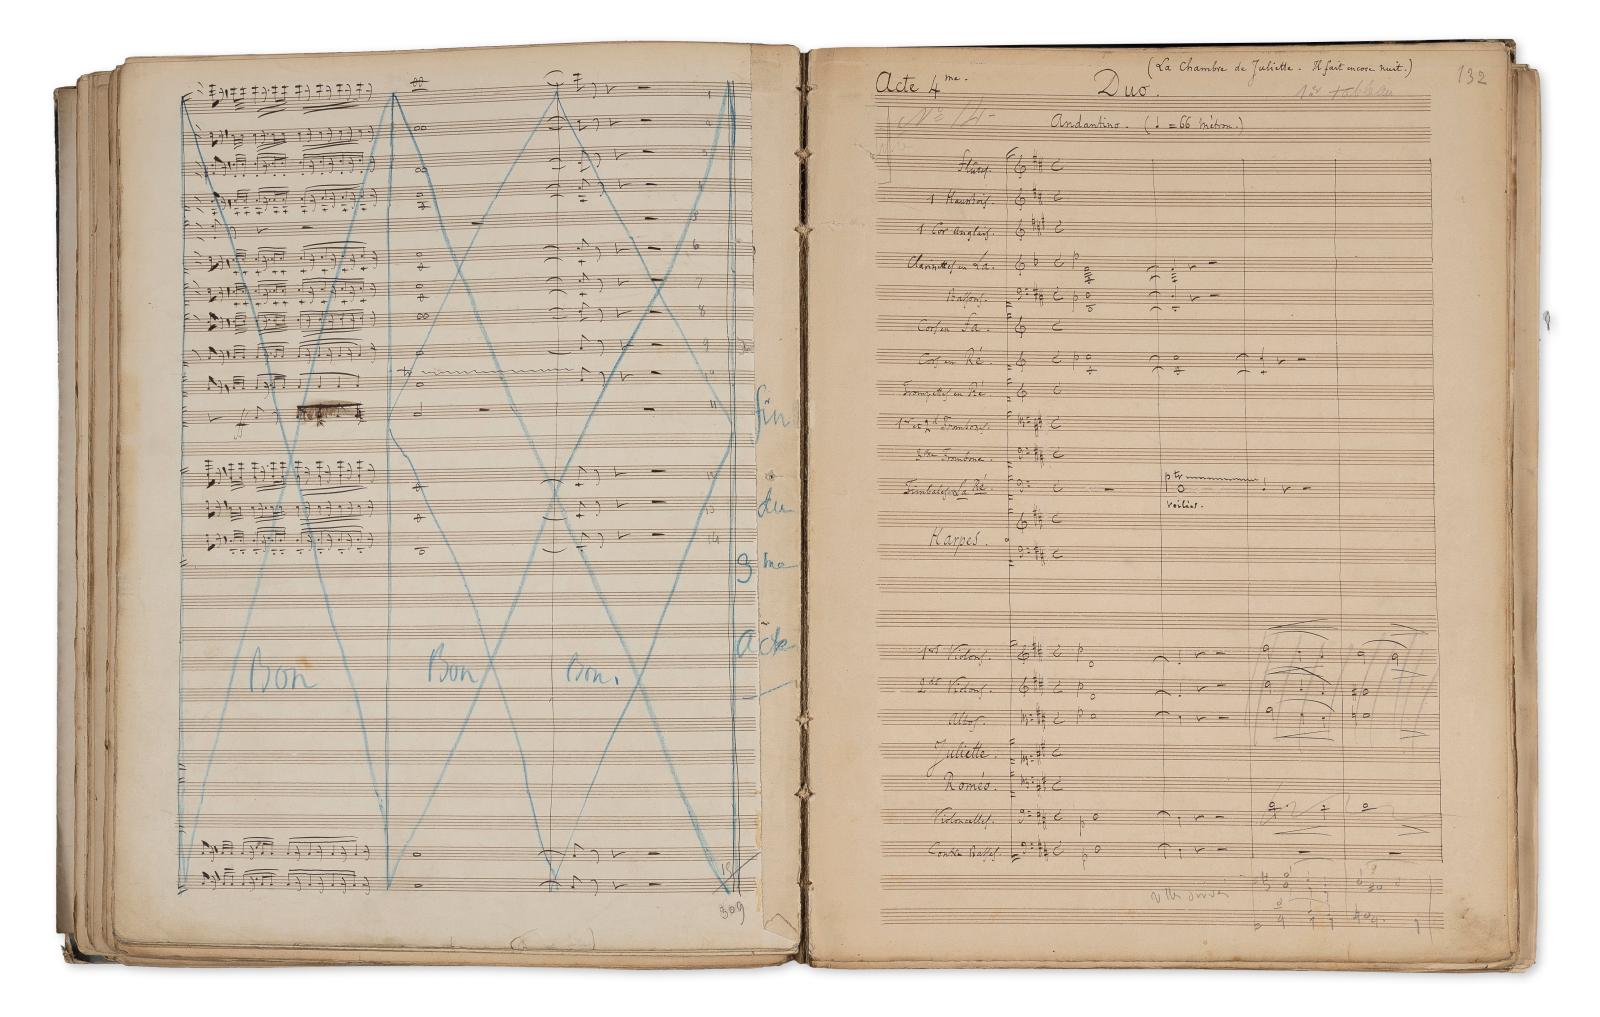 Charles Gounod (1818-1893), manuscrit autographe pour l’opéra en cinq actes Roméo et Juliette, 1866, fort volume in-folio de 925 pages env